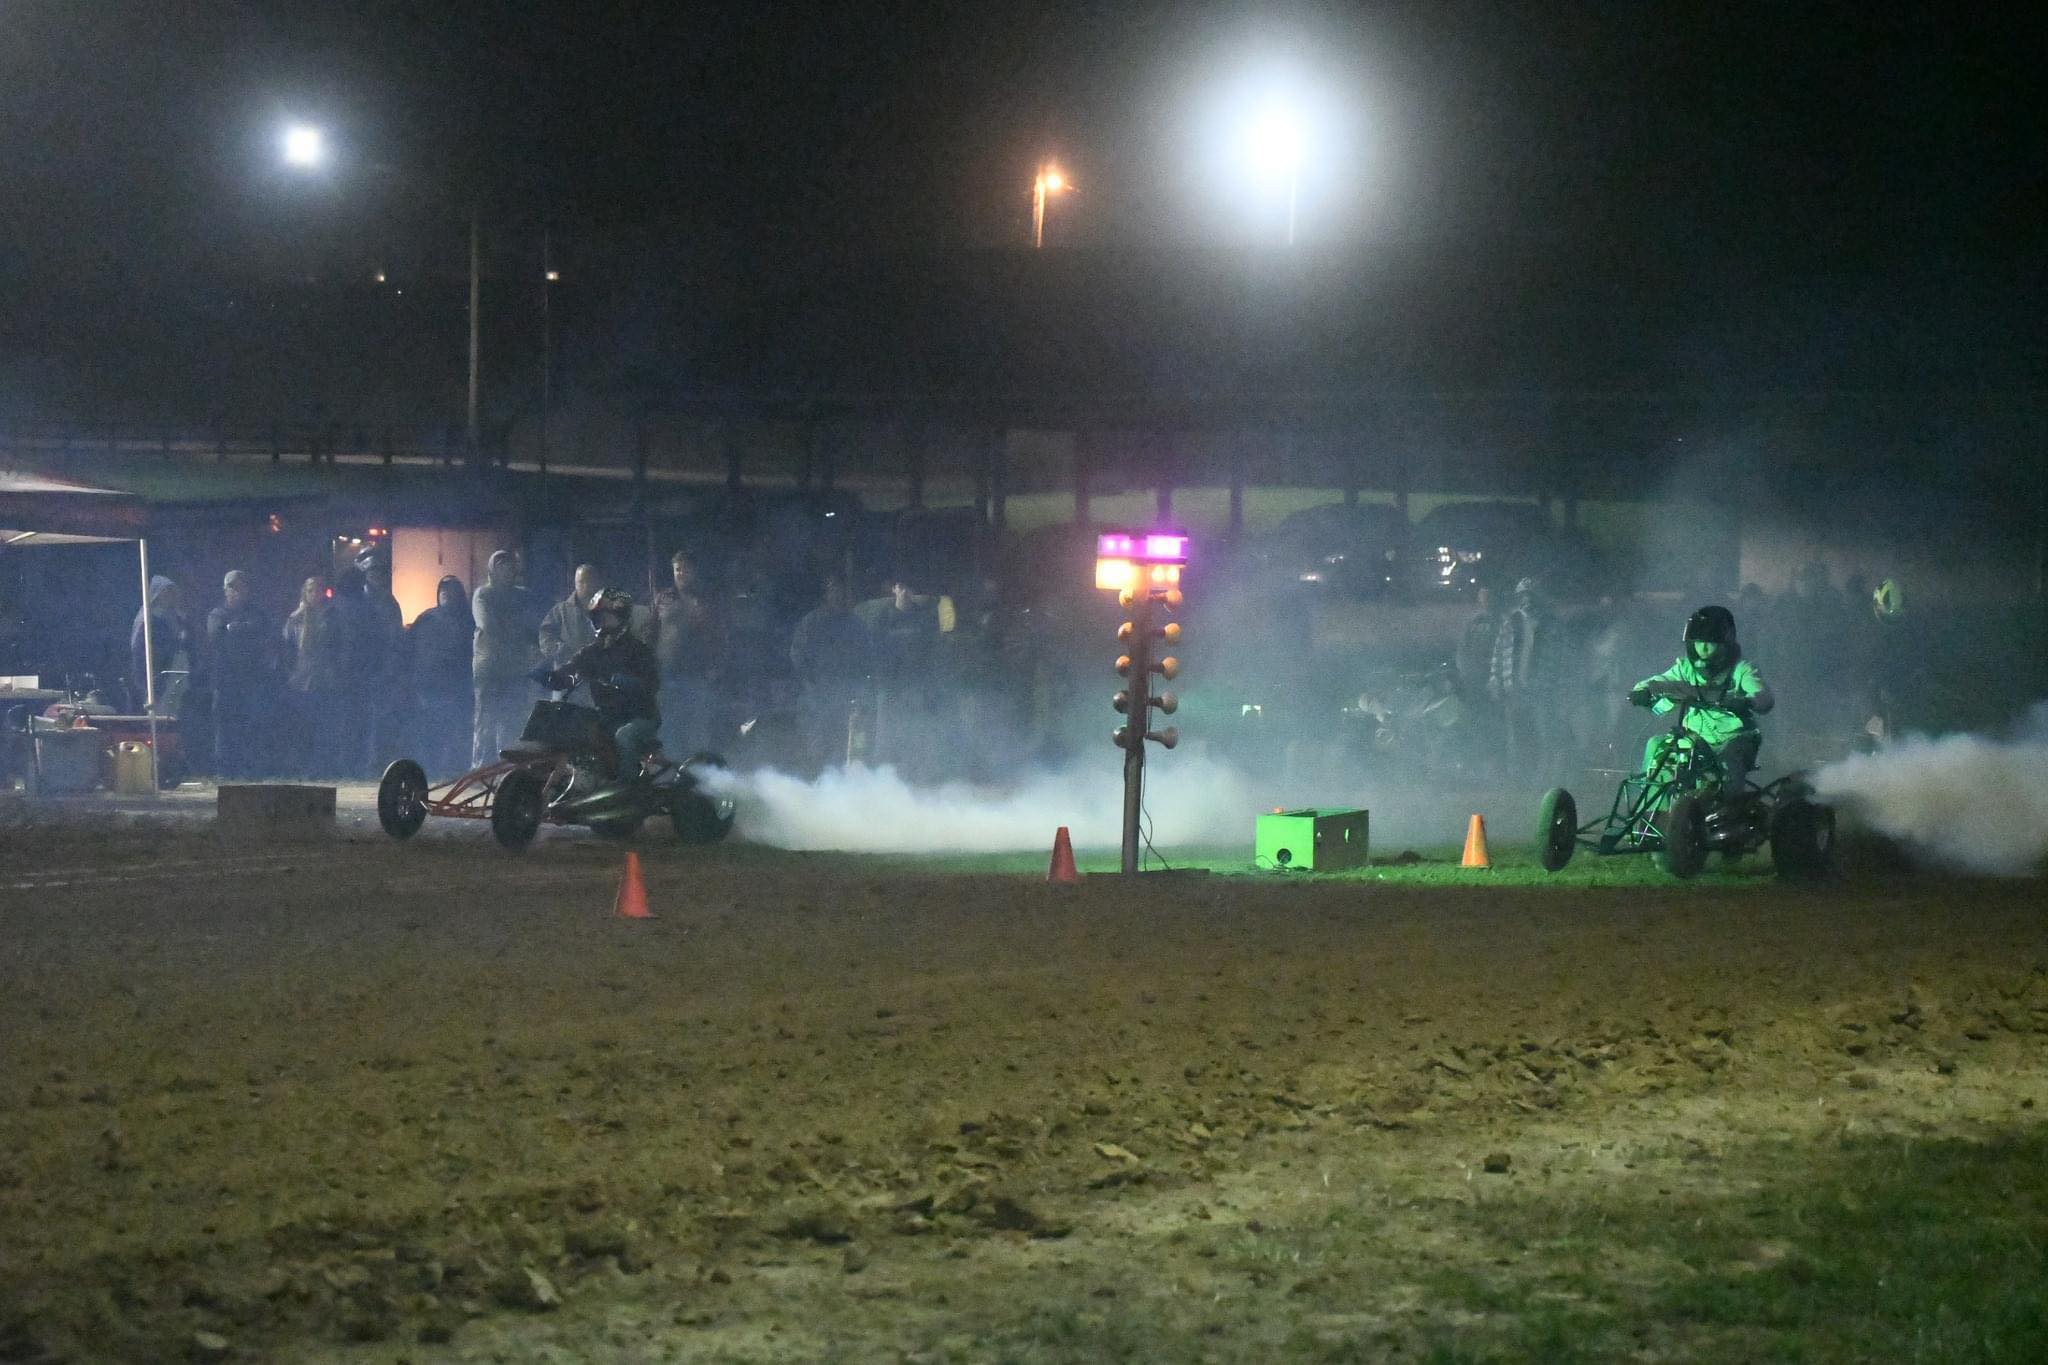 KOI Drag Racing at Marion County Fairgrounds